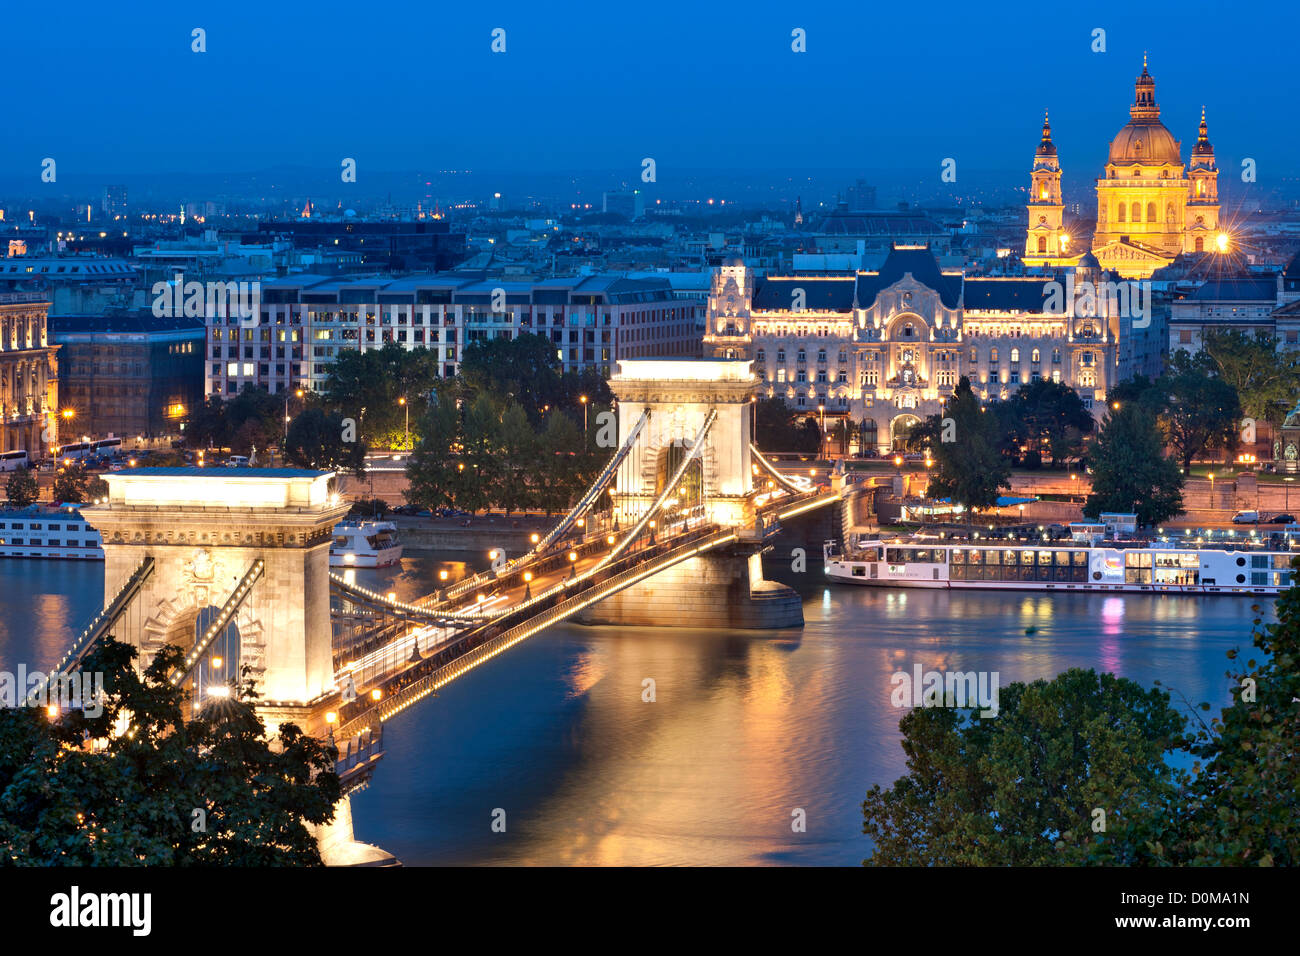 Vista nocturna de Széchenyi Chain Bridge sobre el río Danubio en Budapest, capital de Hungría. Foto de stock